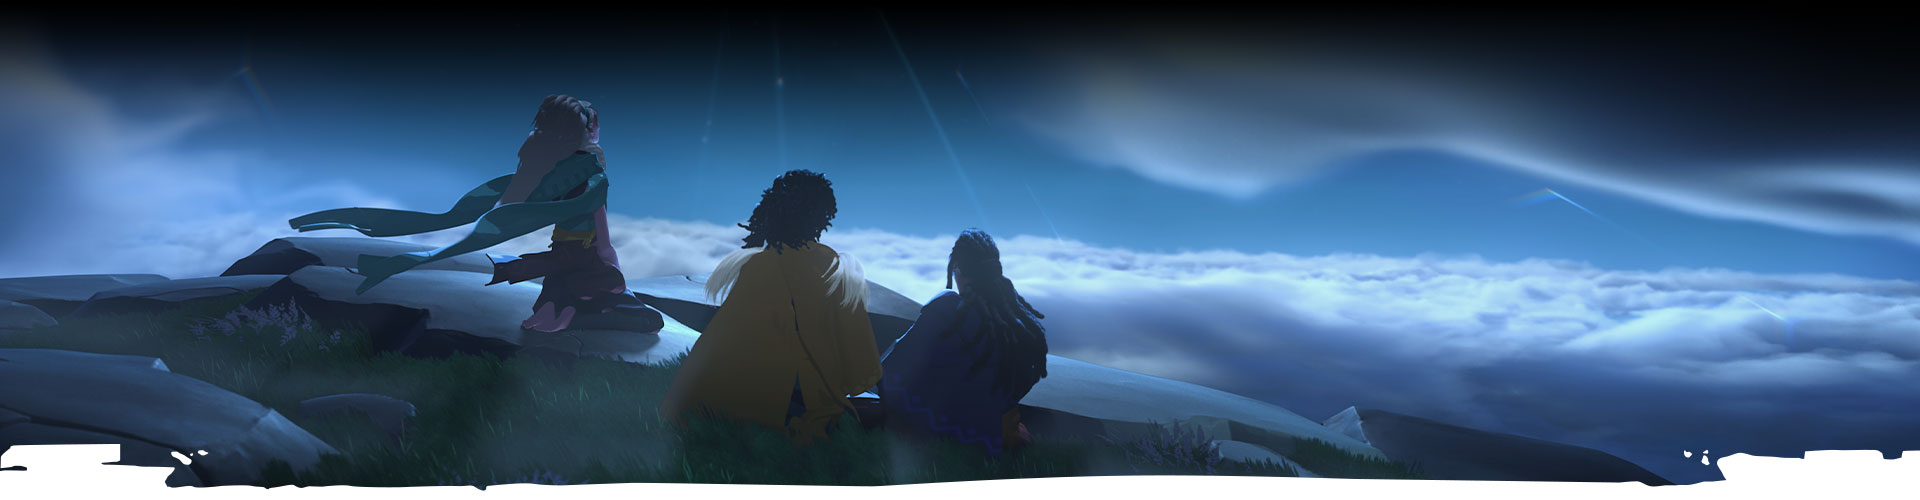 Tres personajes miran al cielo nocturno. 